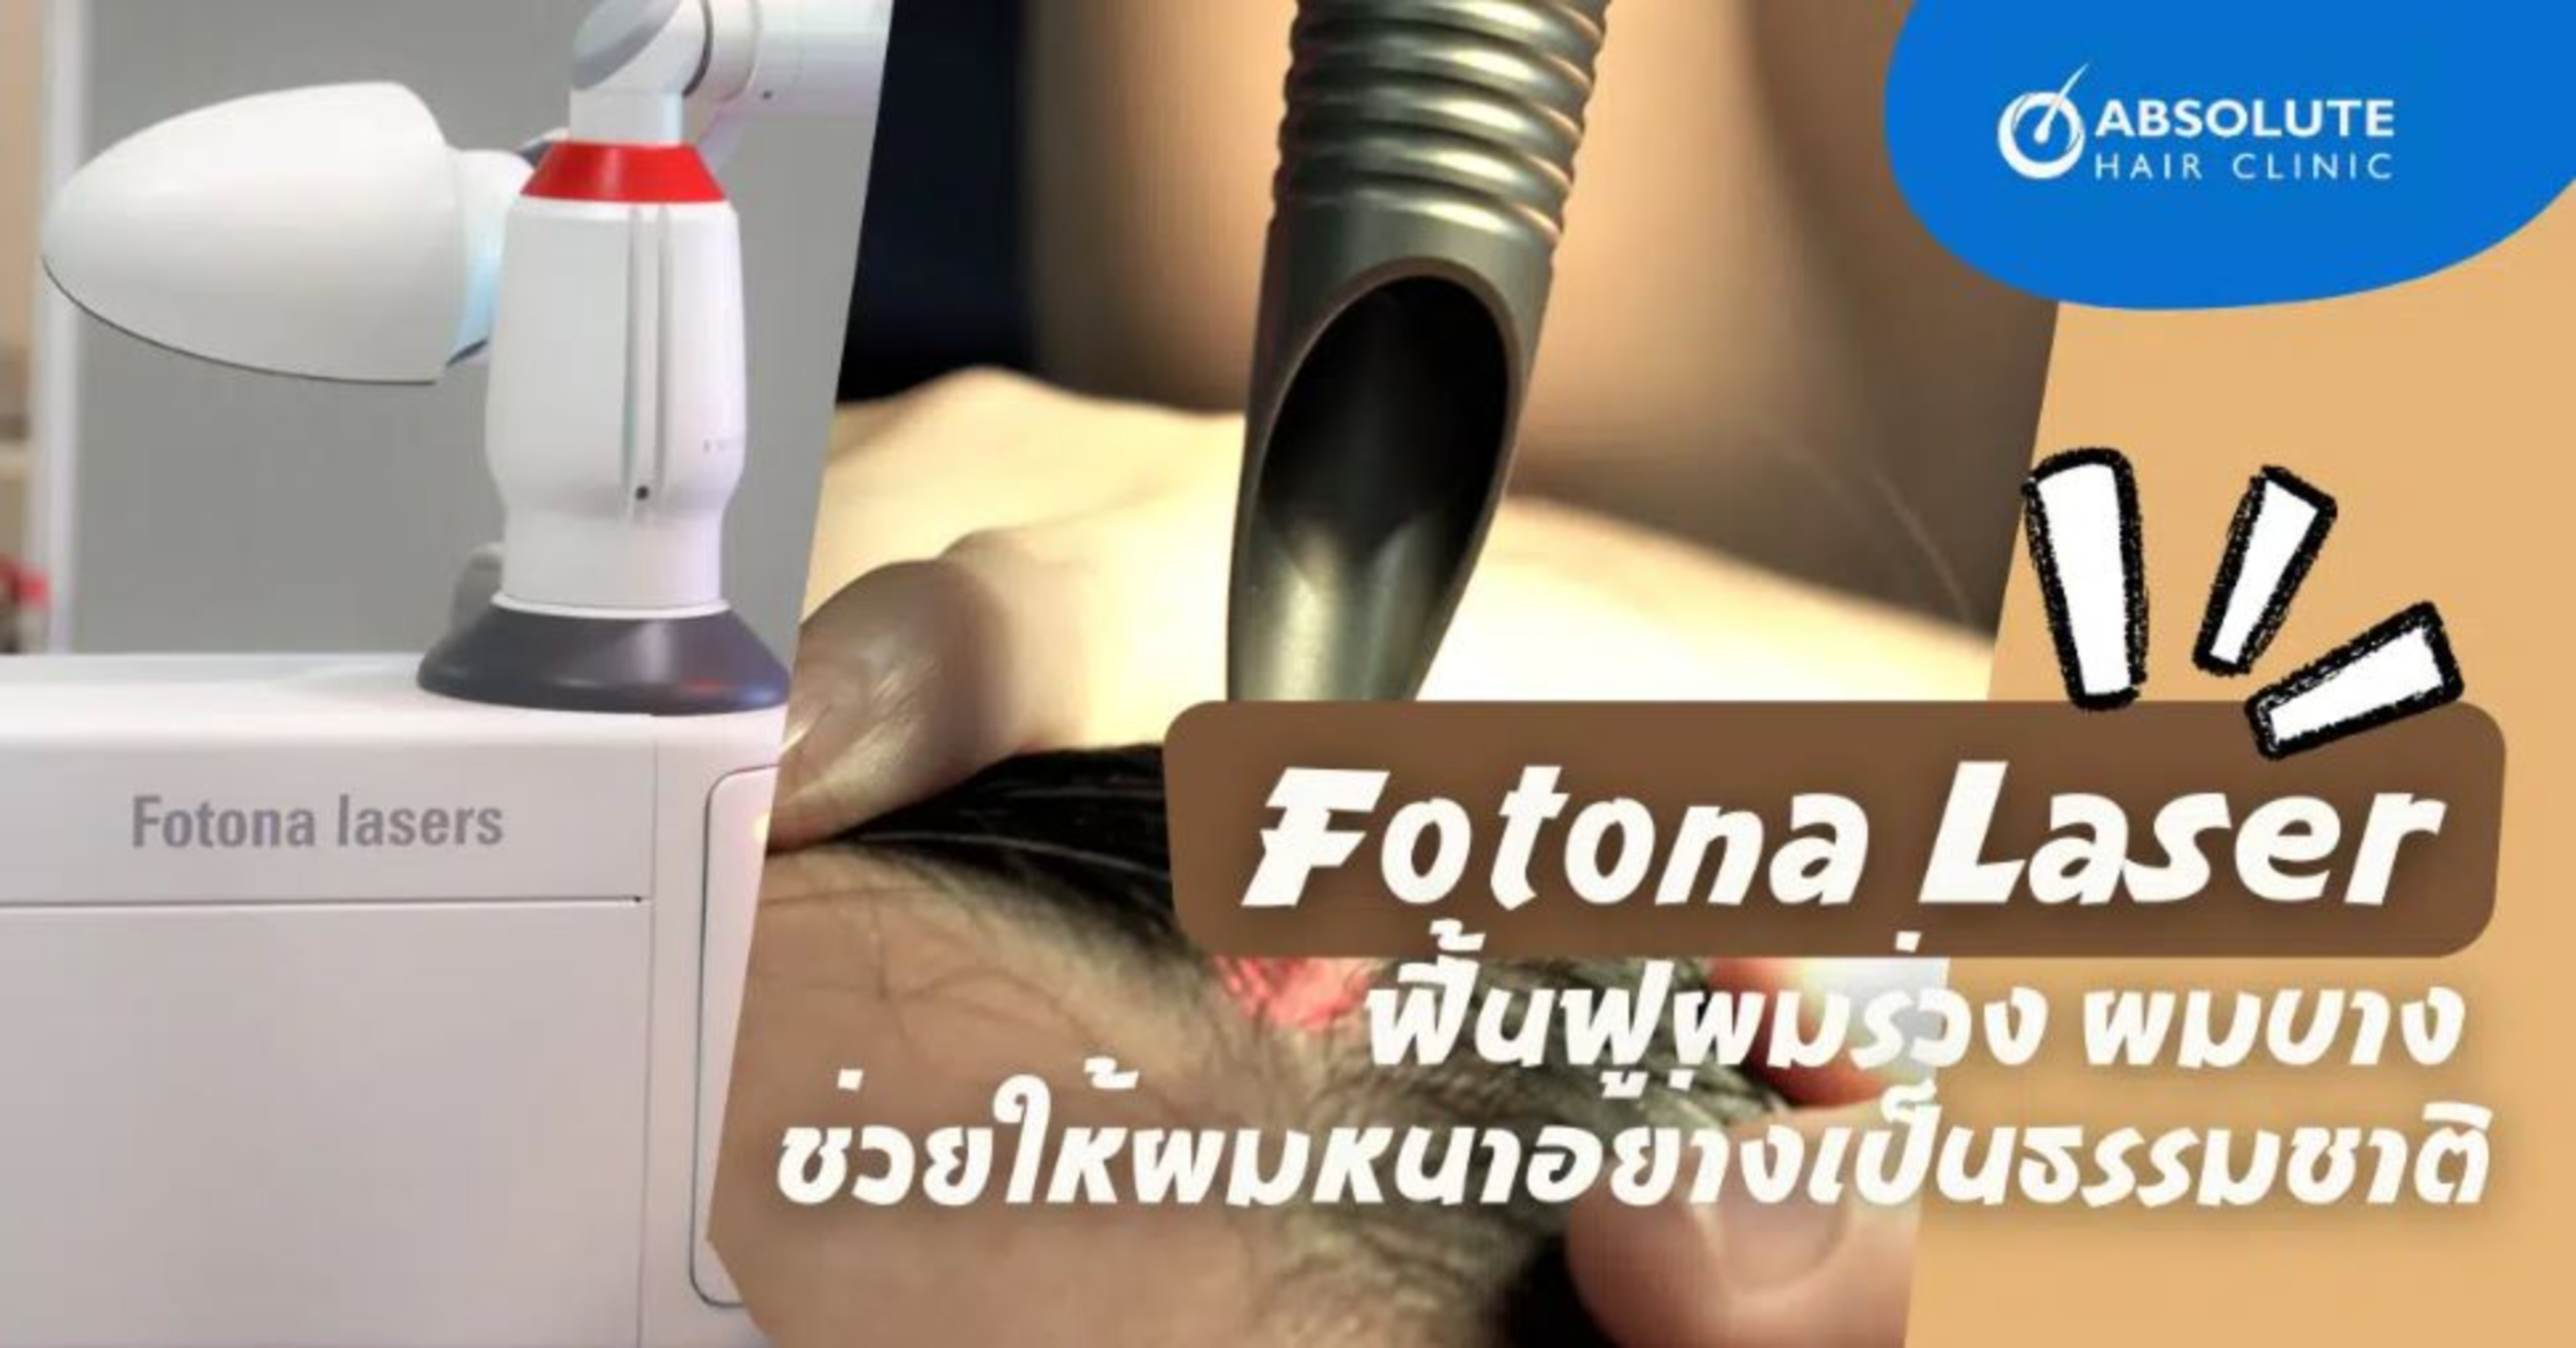 Laser Fotona - giải pháp điều trị tóc rụng, tóc thưa mỏng và làm dày tóc một cách tự nhiên